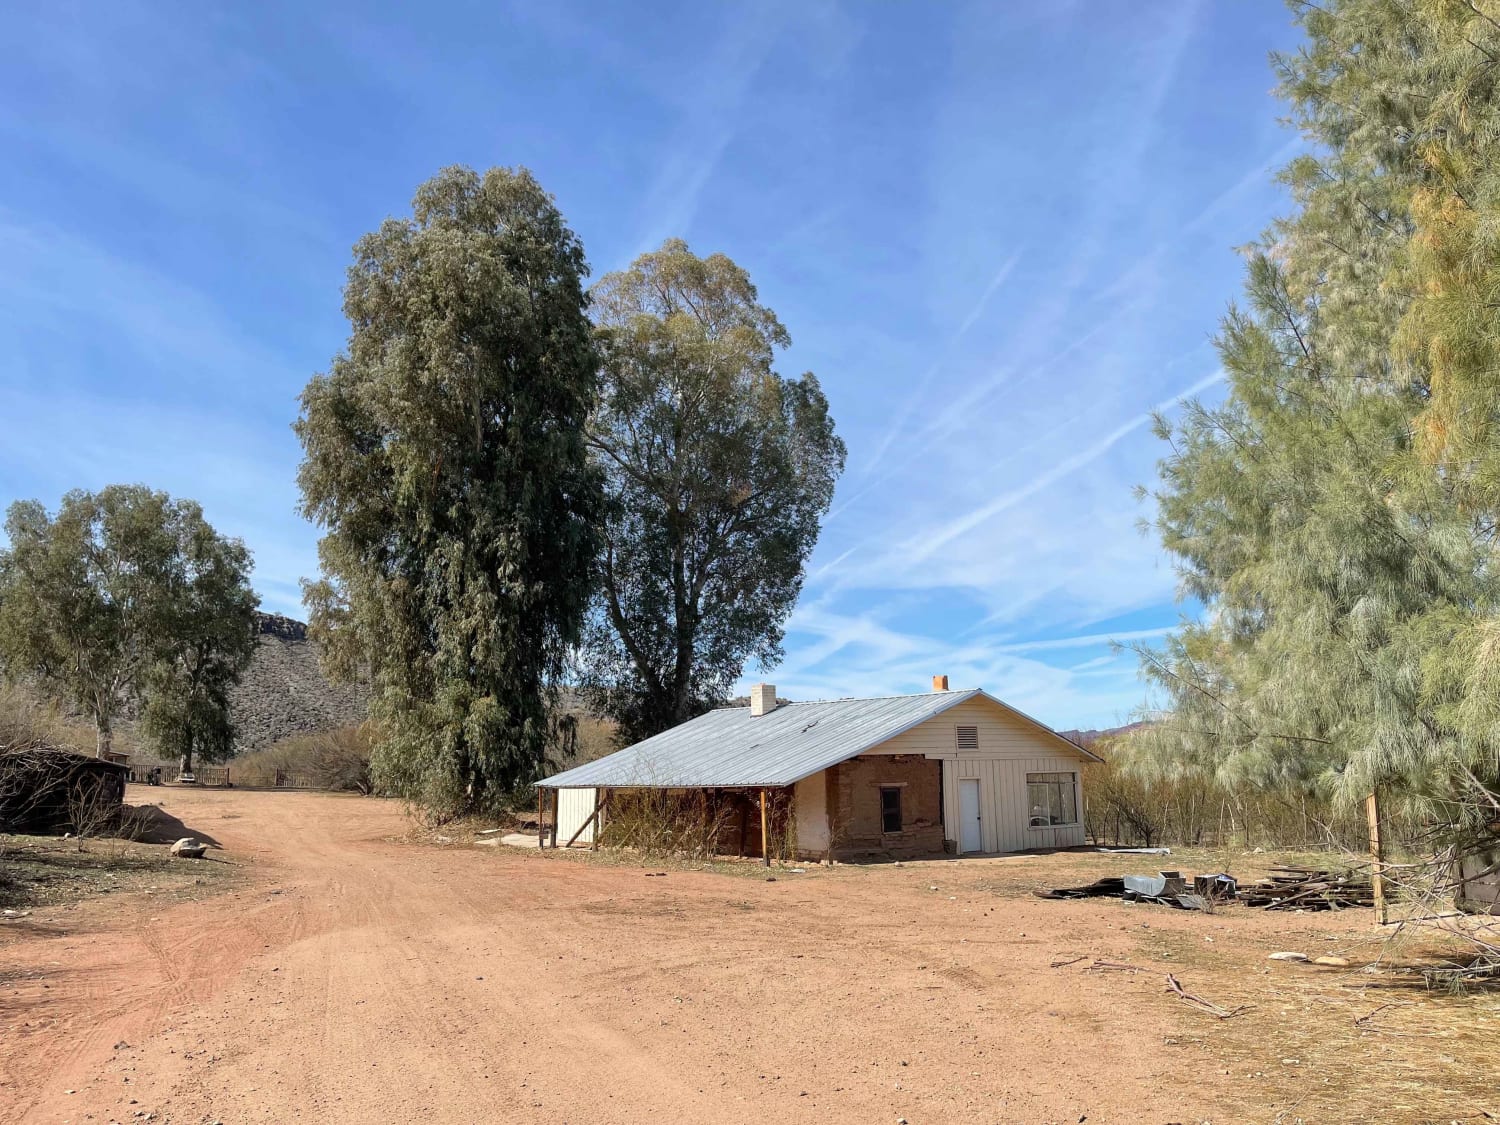 Palmerita Ranch House Spur for AZPT